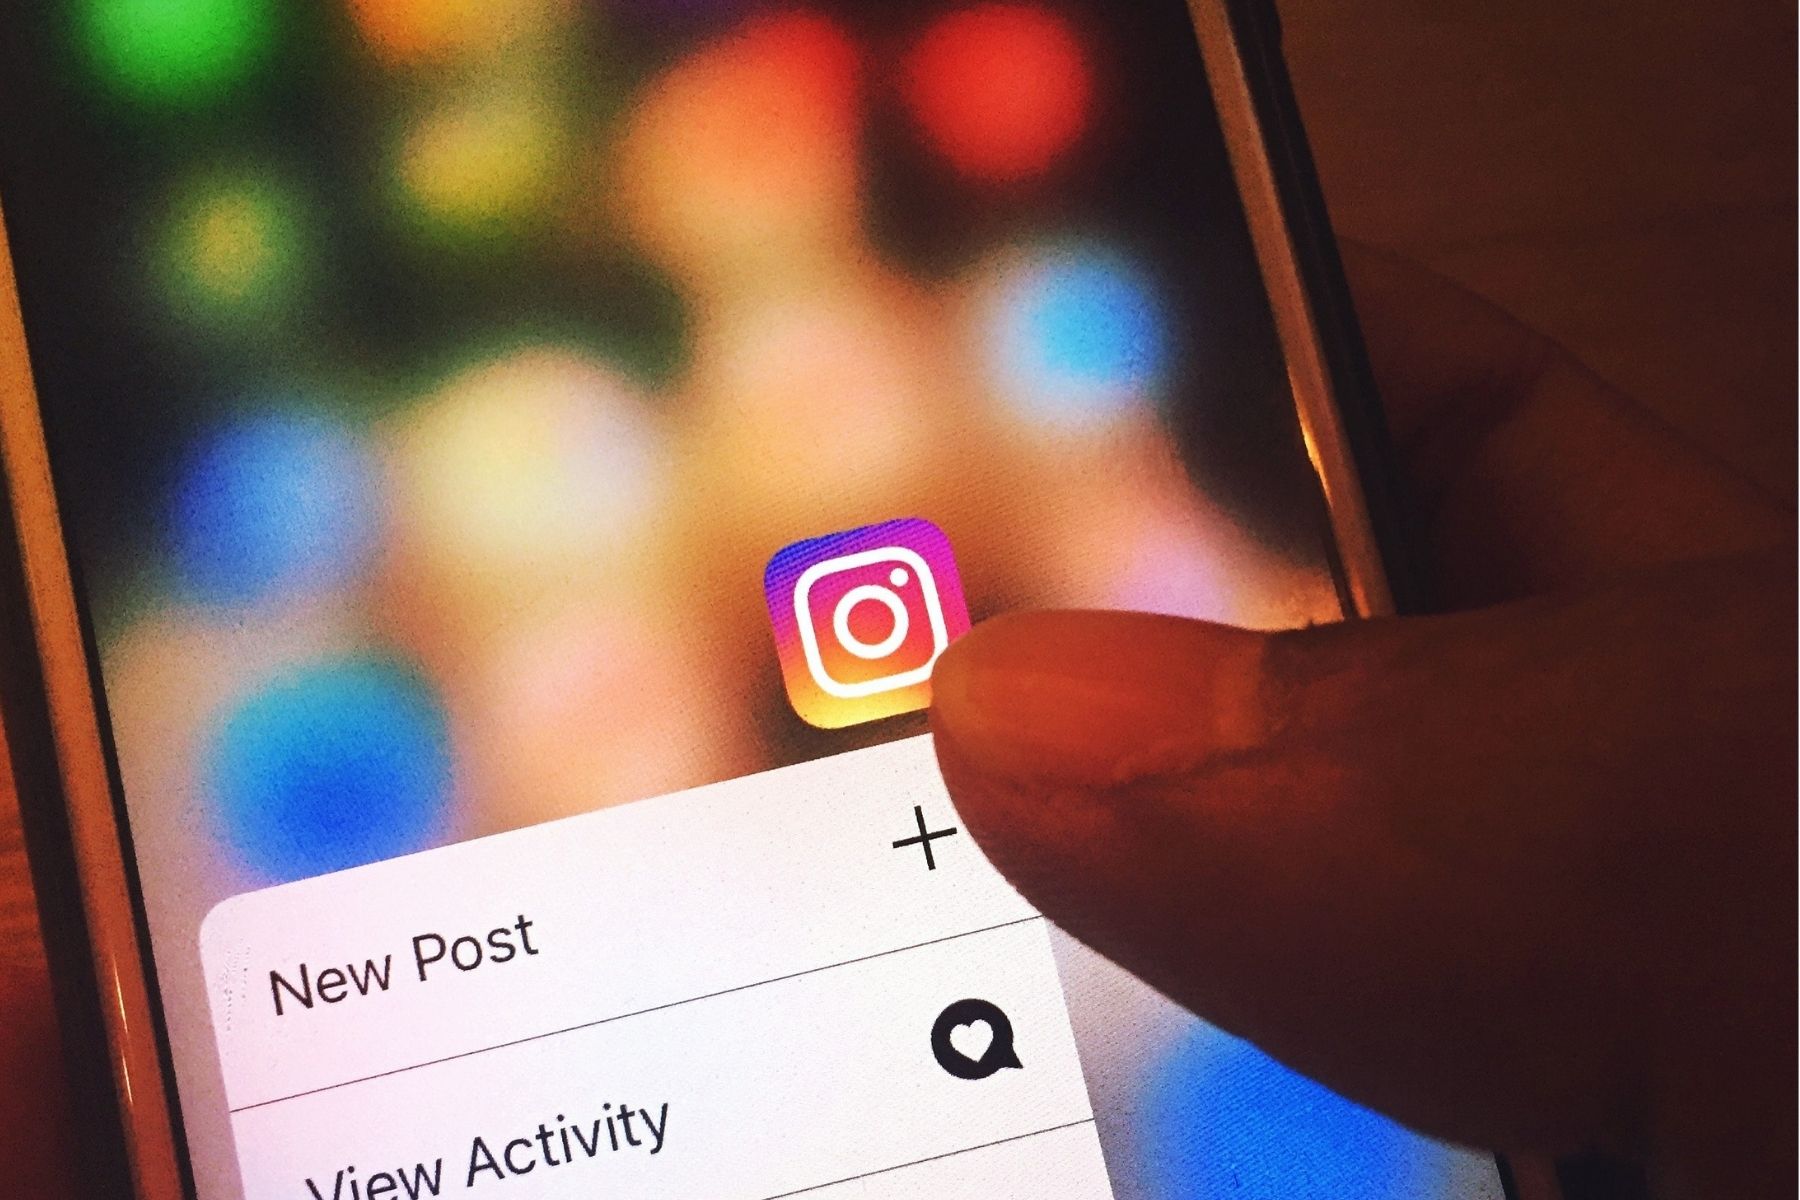 Usuários do serviço reclamaram nas redes sociais de problemas com o uso de filtros nos stories e na tela de boas-vindas